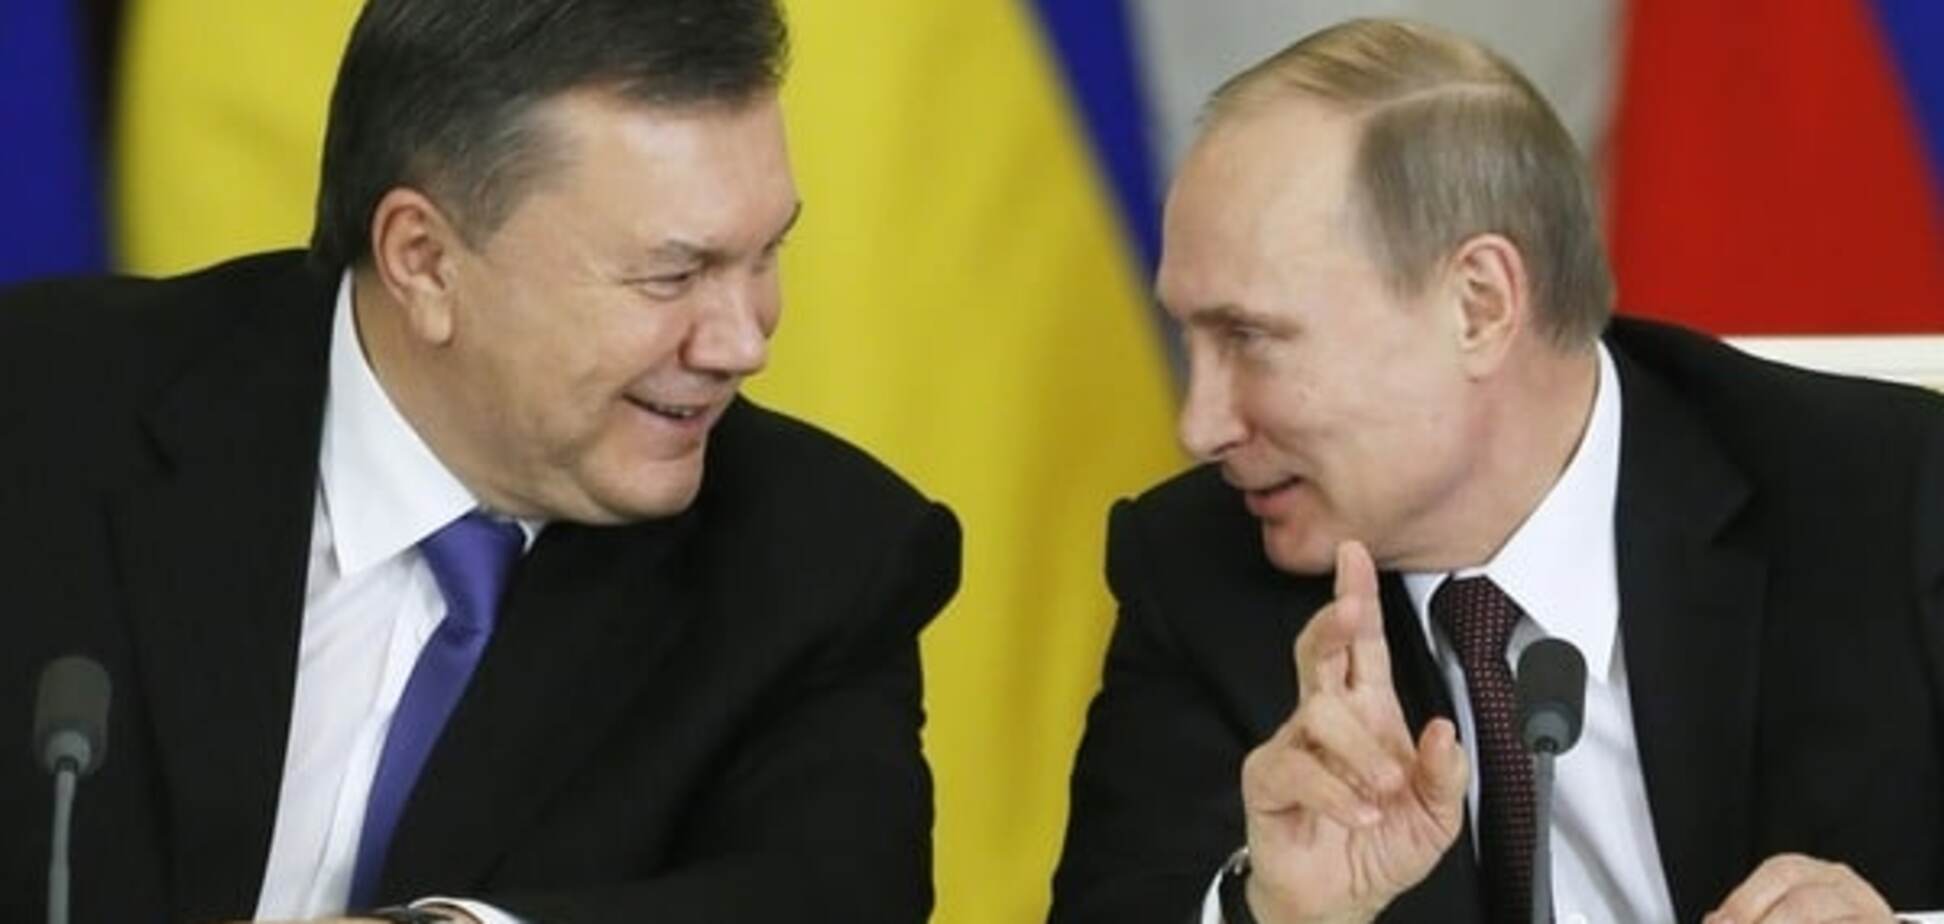 Замануха: Янукович розповів, як МВФ вабив його пряником, а Путін дав